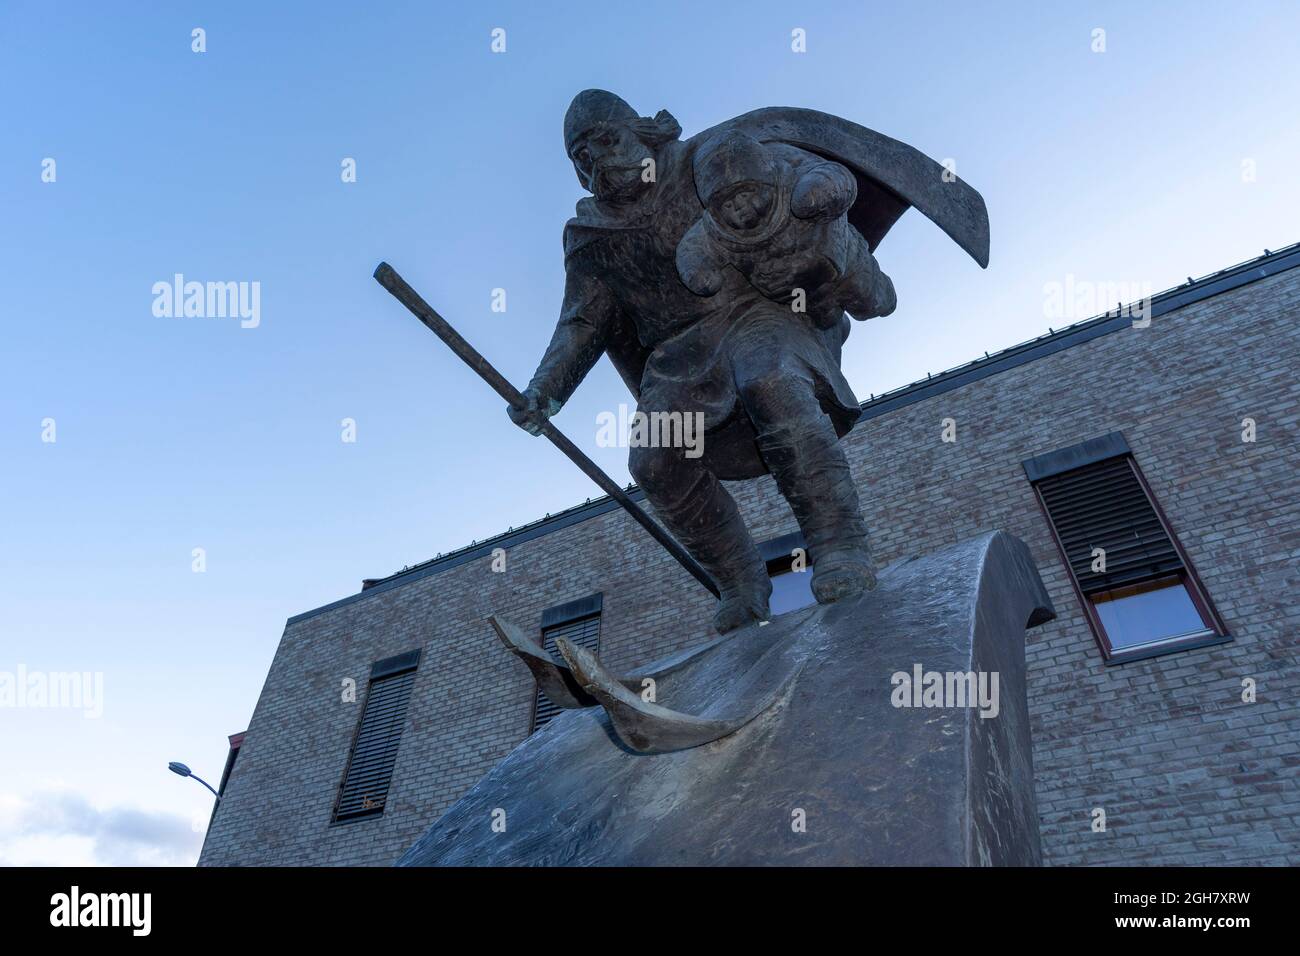 Bronzeskulptur eines Skifahrerkindes - ein Birkebeiner-Krieger, der laut Legende den bedrohten Prinzen rettet - in Lillehammer, Norwegen, Europa Stockfoto